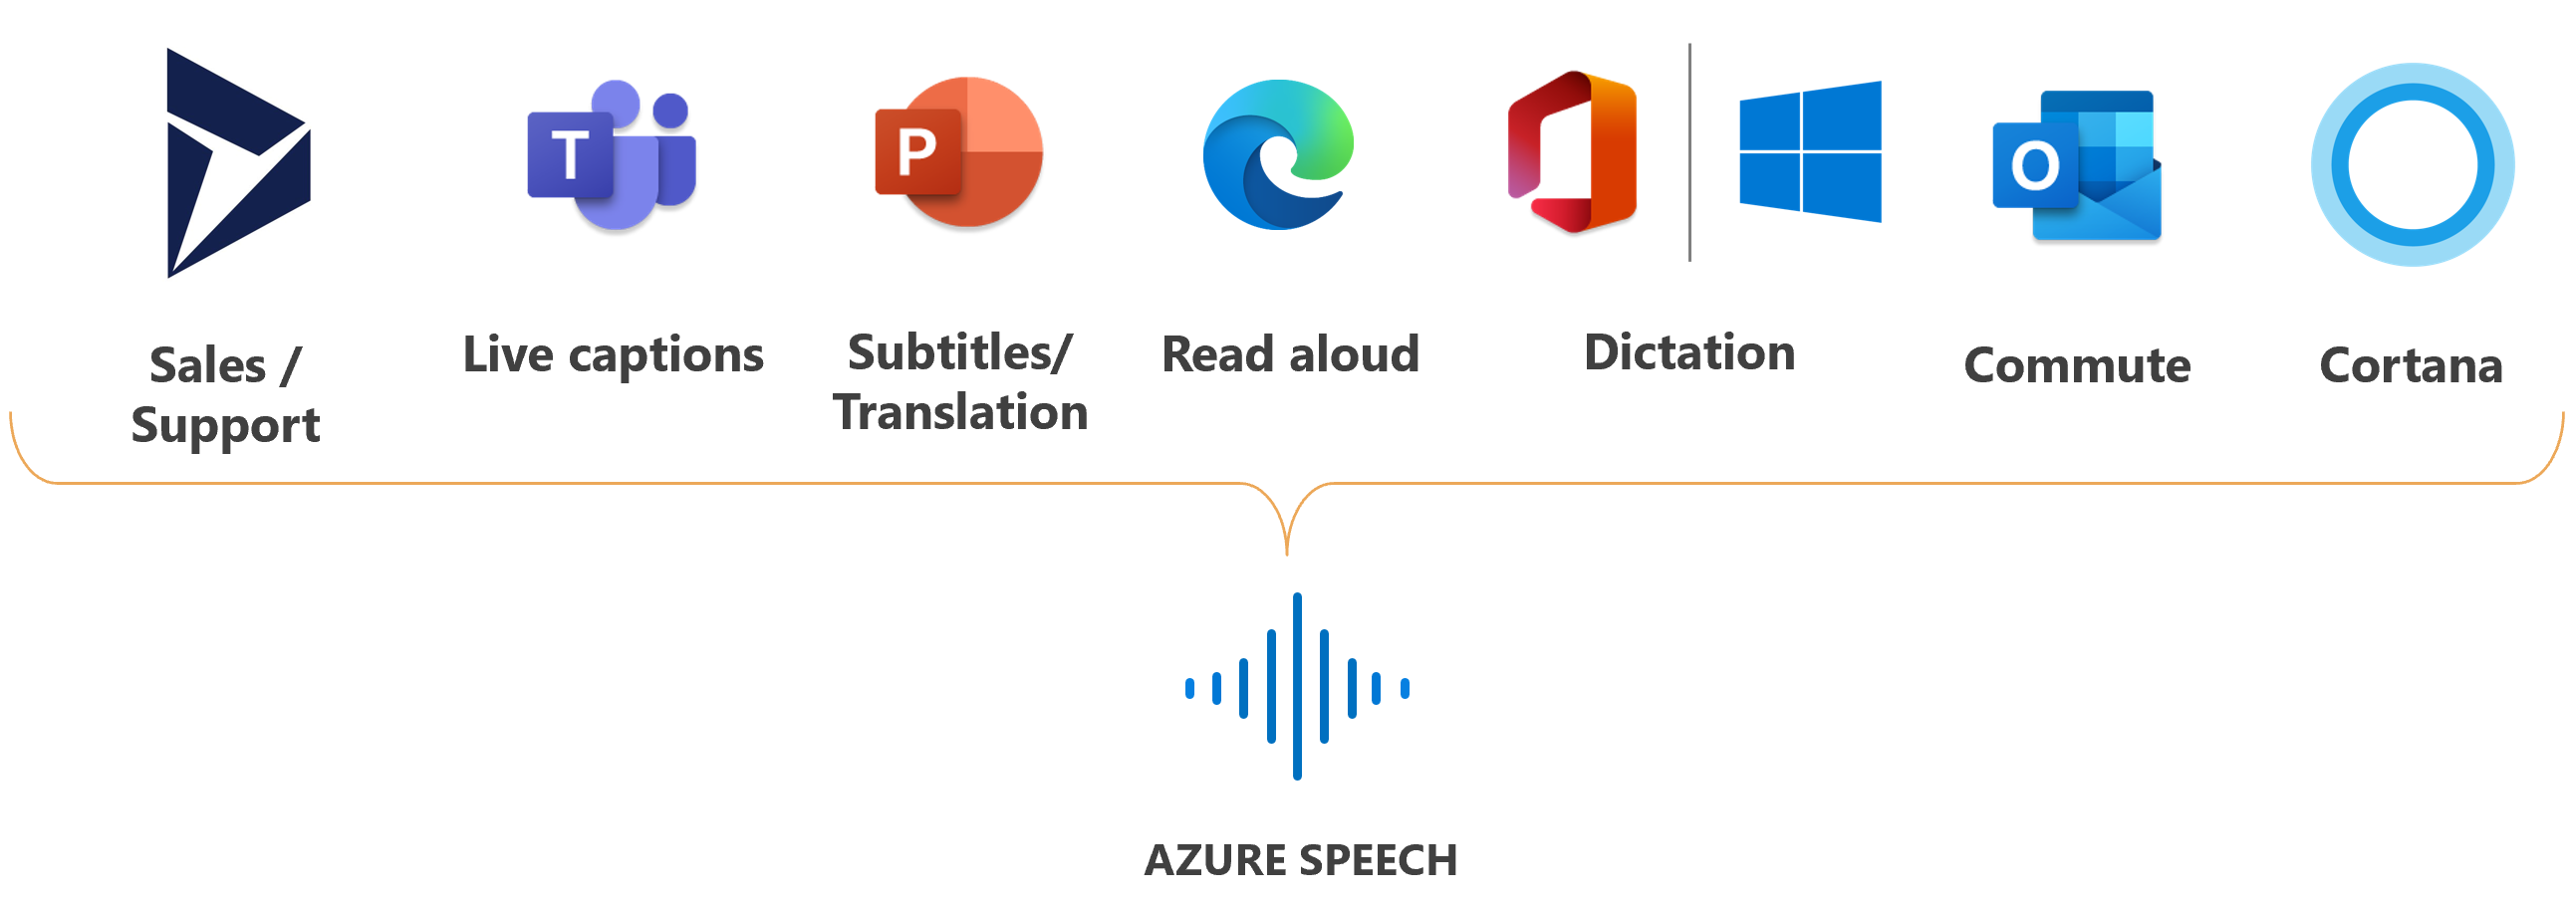 Image montrant les logos des produits Microsoft où le service Speech est utilisé.